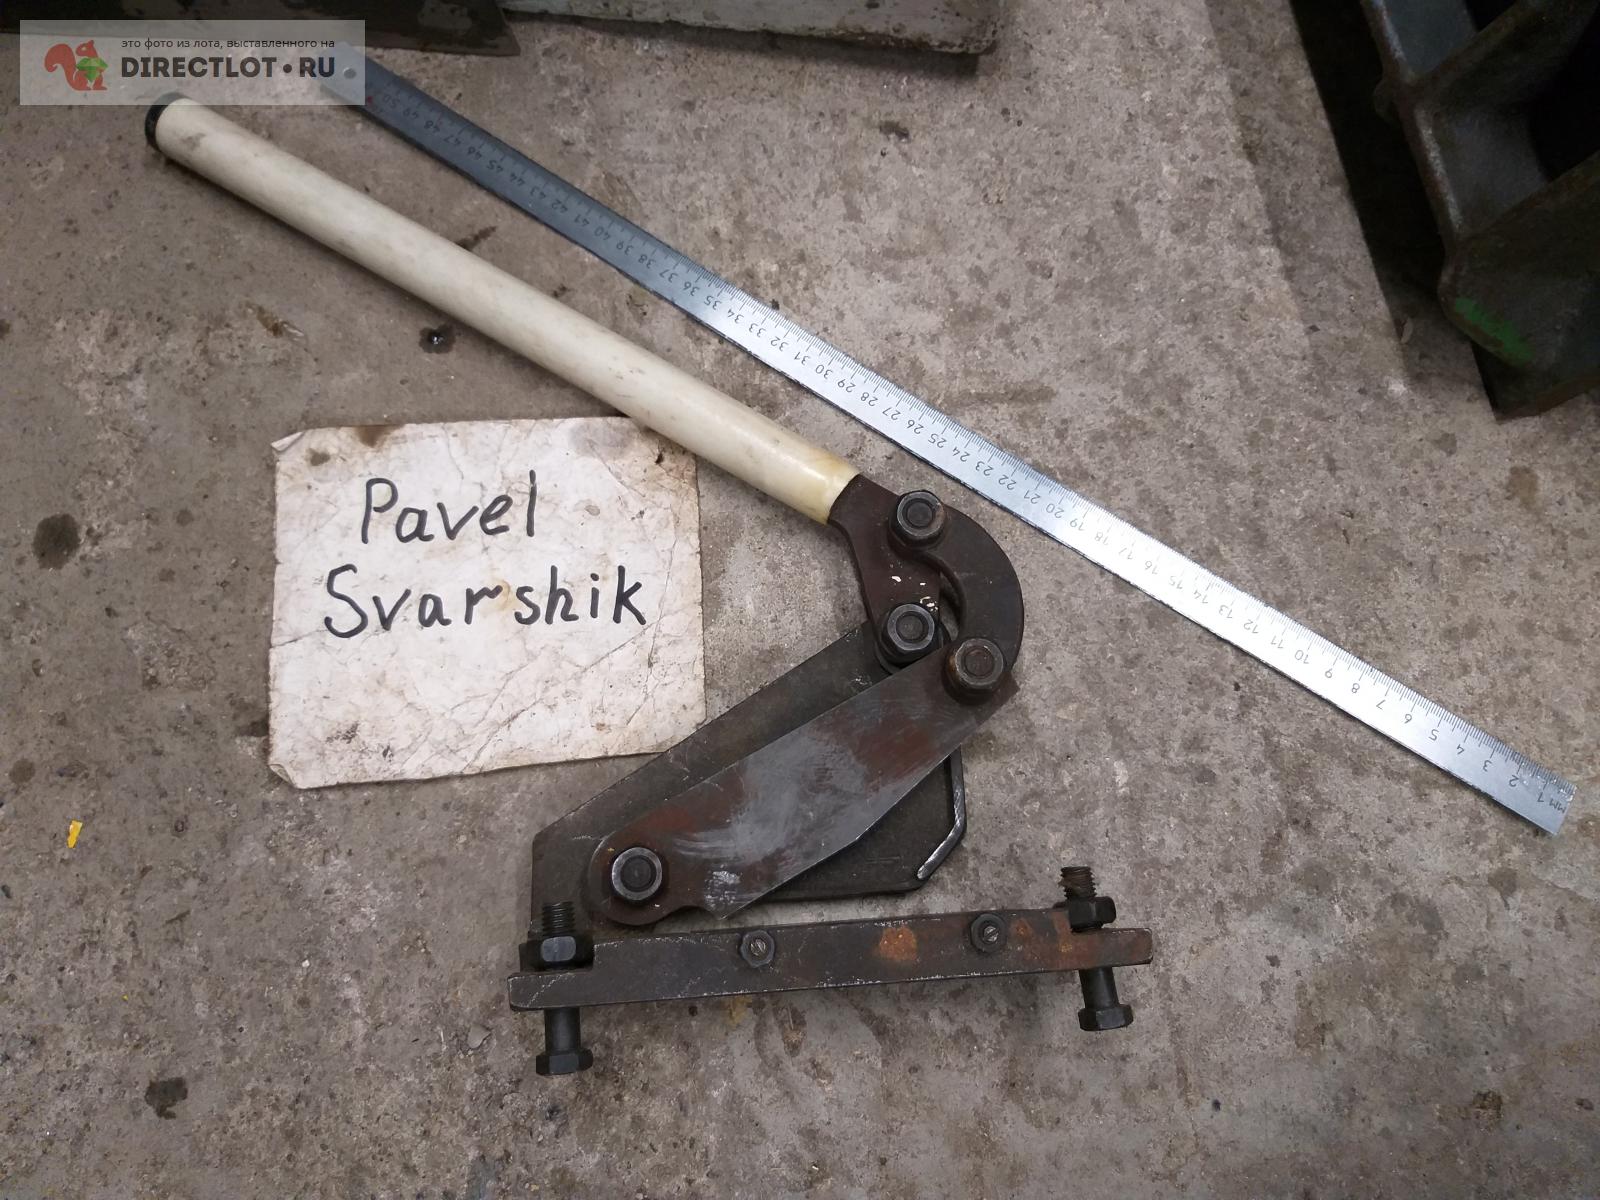 Ножницы для резки металла  в Саратове цена 1600 Р на DIRECTLOT.RU .